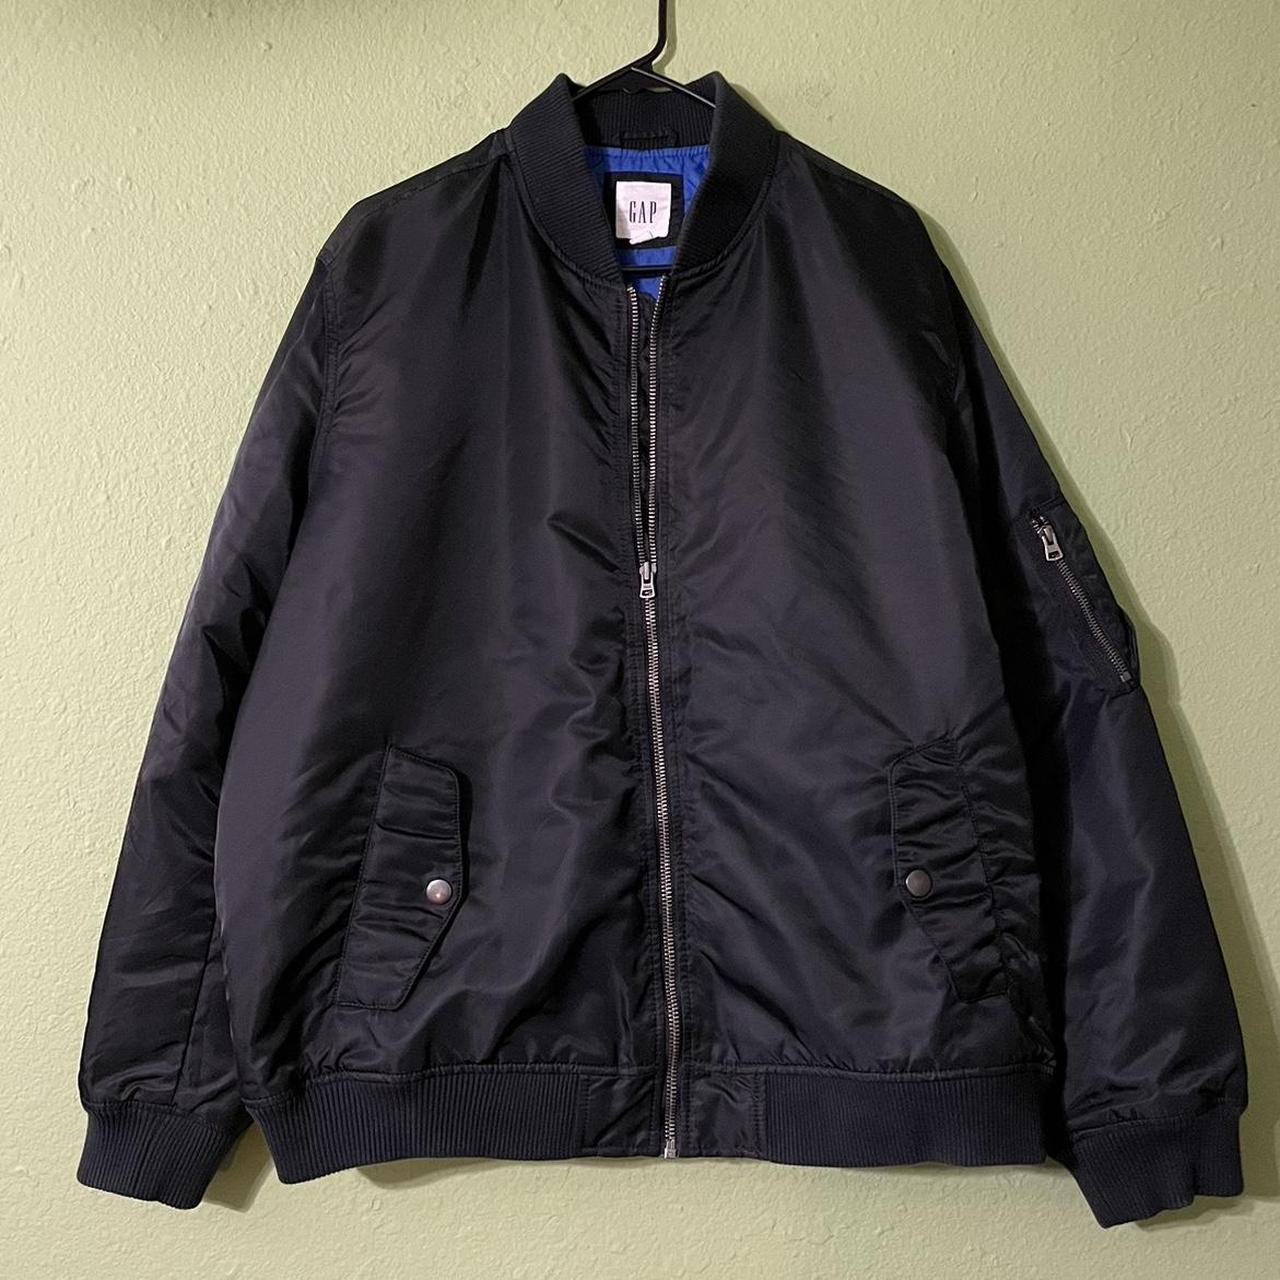 Black Gap bomber jacket essential with blue inside... - Depop